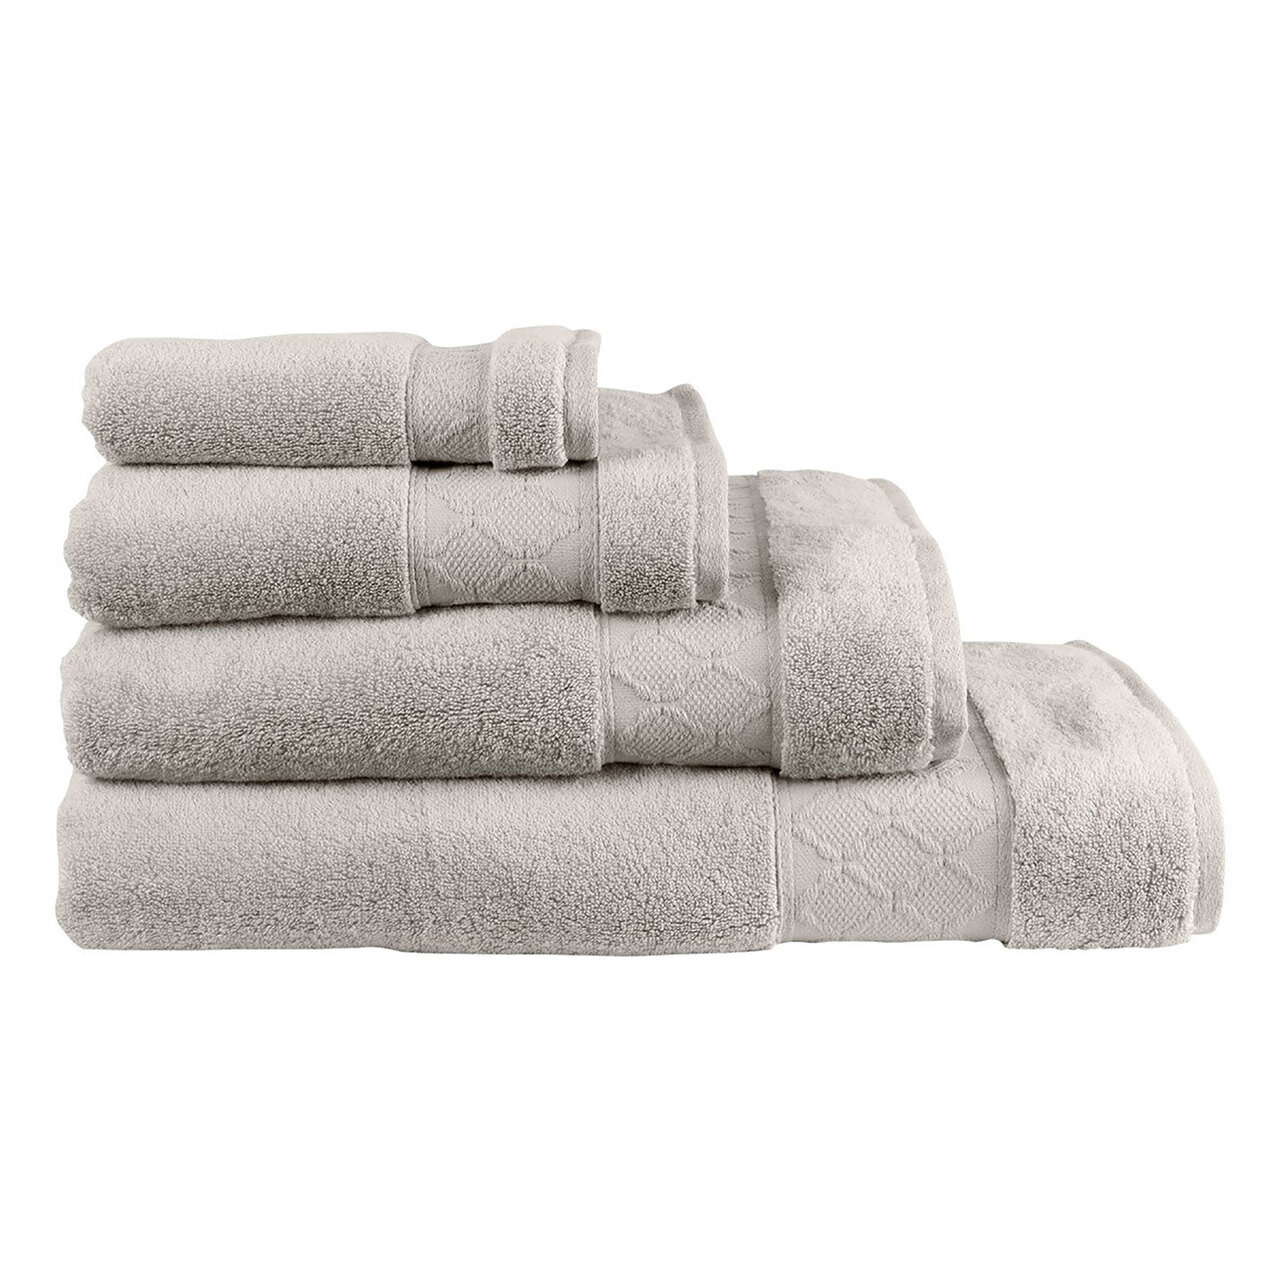 Le Jacquard Caresse Linen Bath Towel 27x55